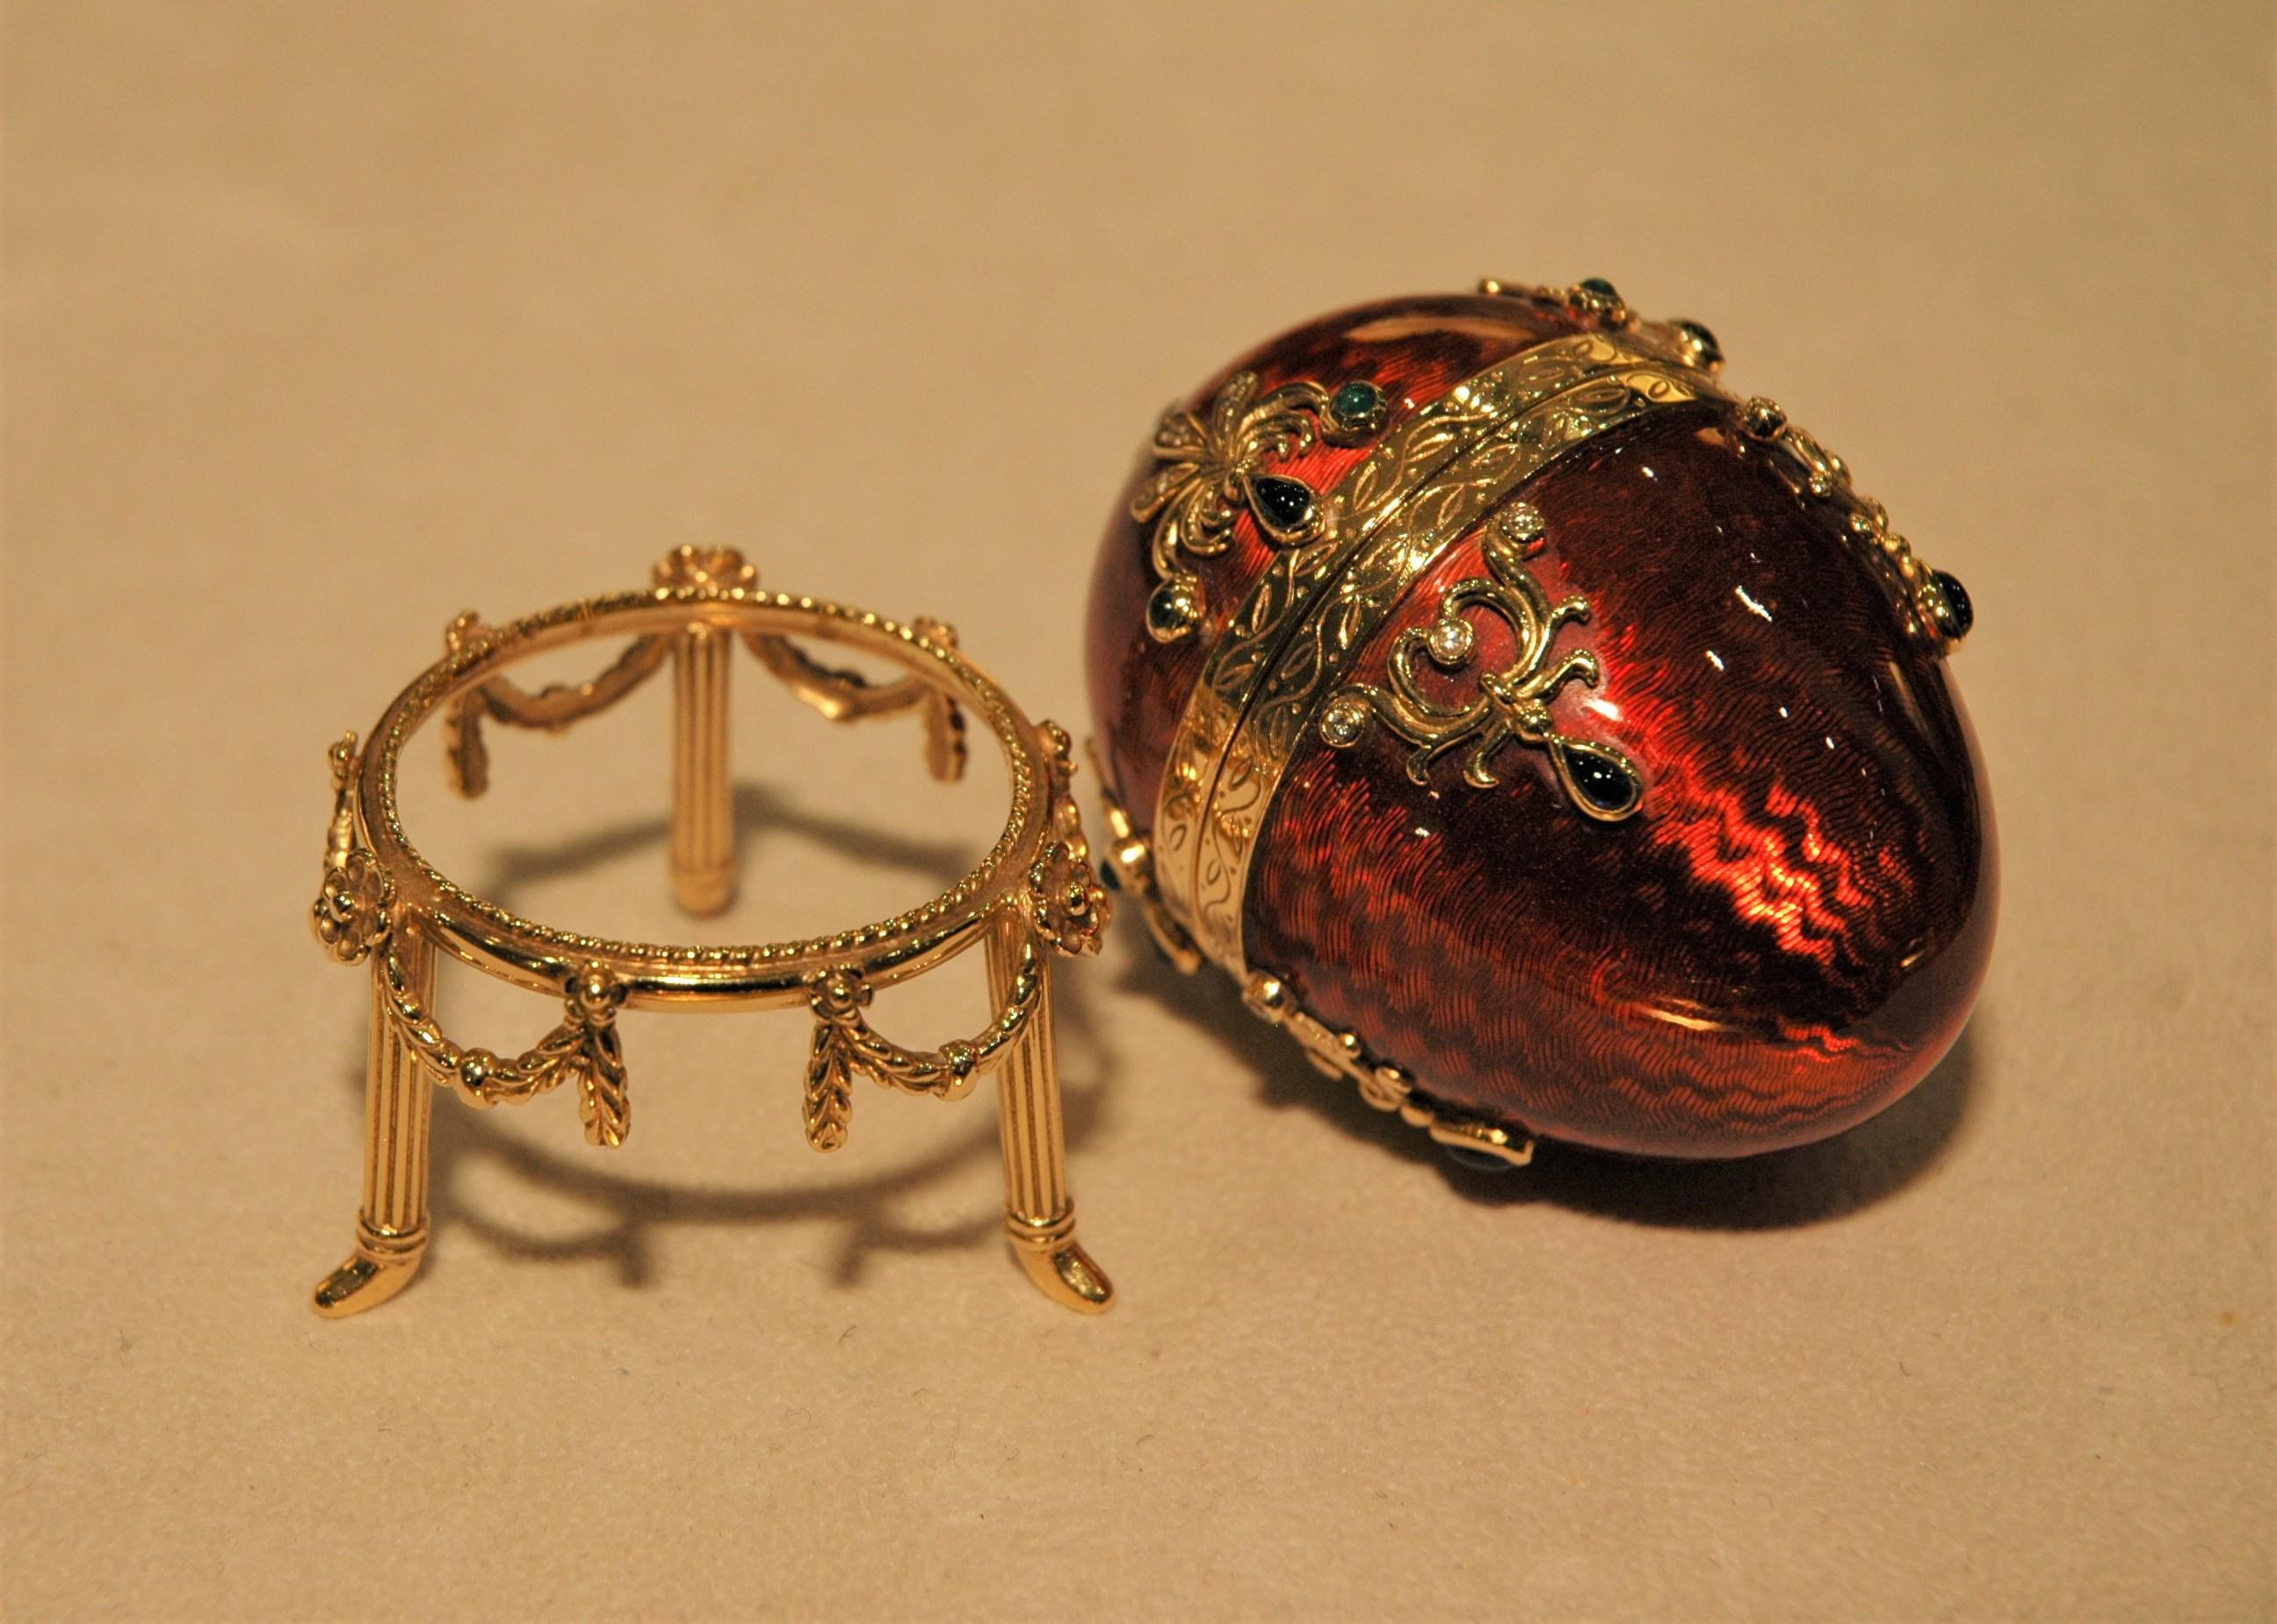 Taille cabochon Fabergé 18 Kt Gold Egg Red Enamel with Gold Stand, Emeralds, Sapphires, Diamonds (Oeuf en or 18 Kt émaillé rouge avec Stand en or, émeraudes, saphirs, diamants) en vente